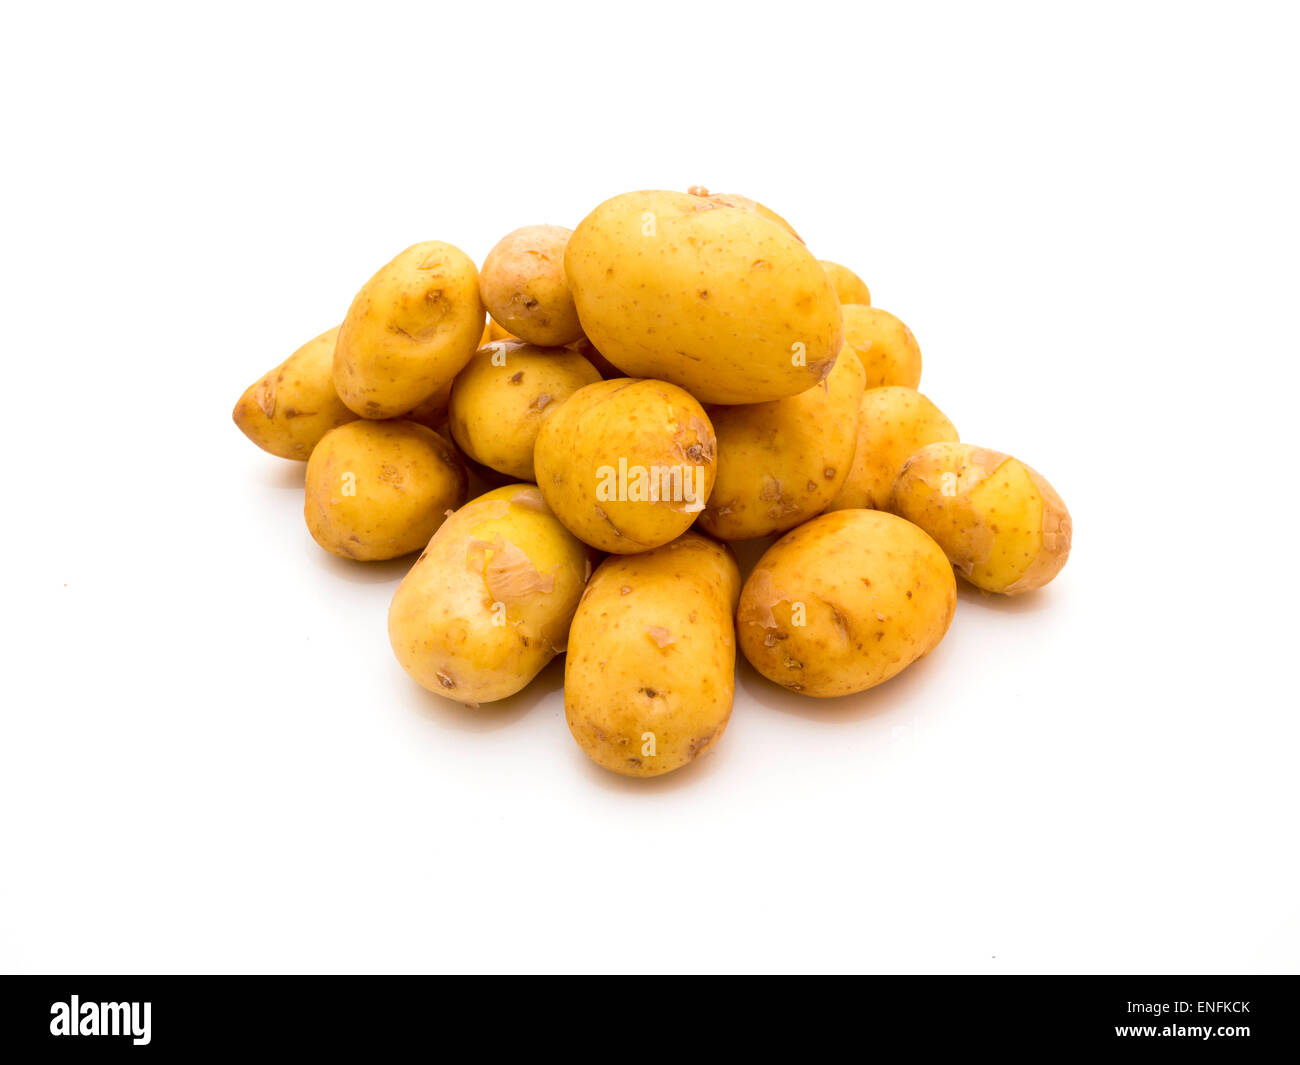 Nuovo raccolto Jersey Royal baby patate su sfondo bianco Foto Stock